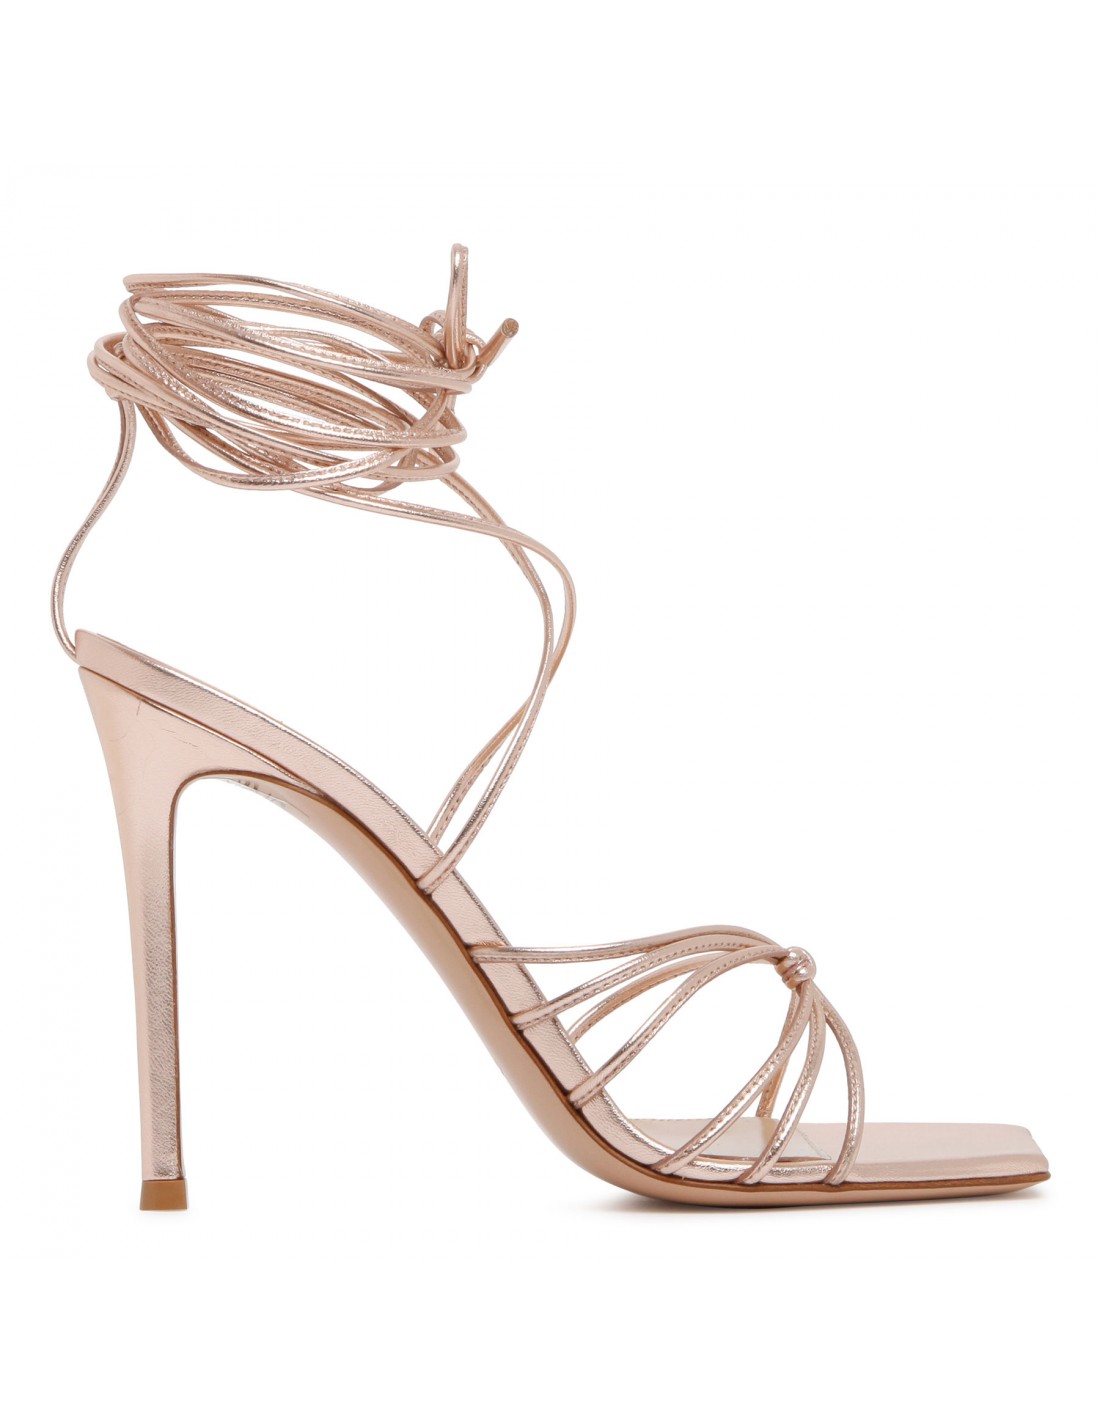 Sylvie metallic peach sandals | Le Noir - Unconventional Luxury